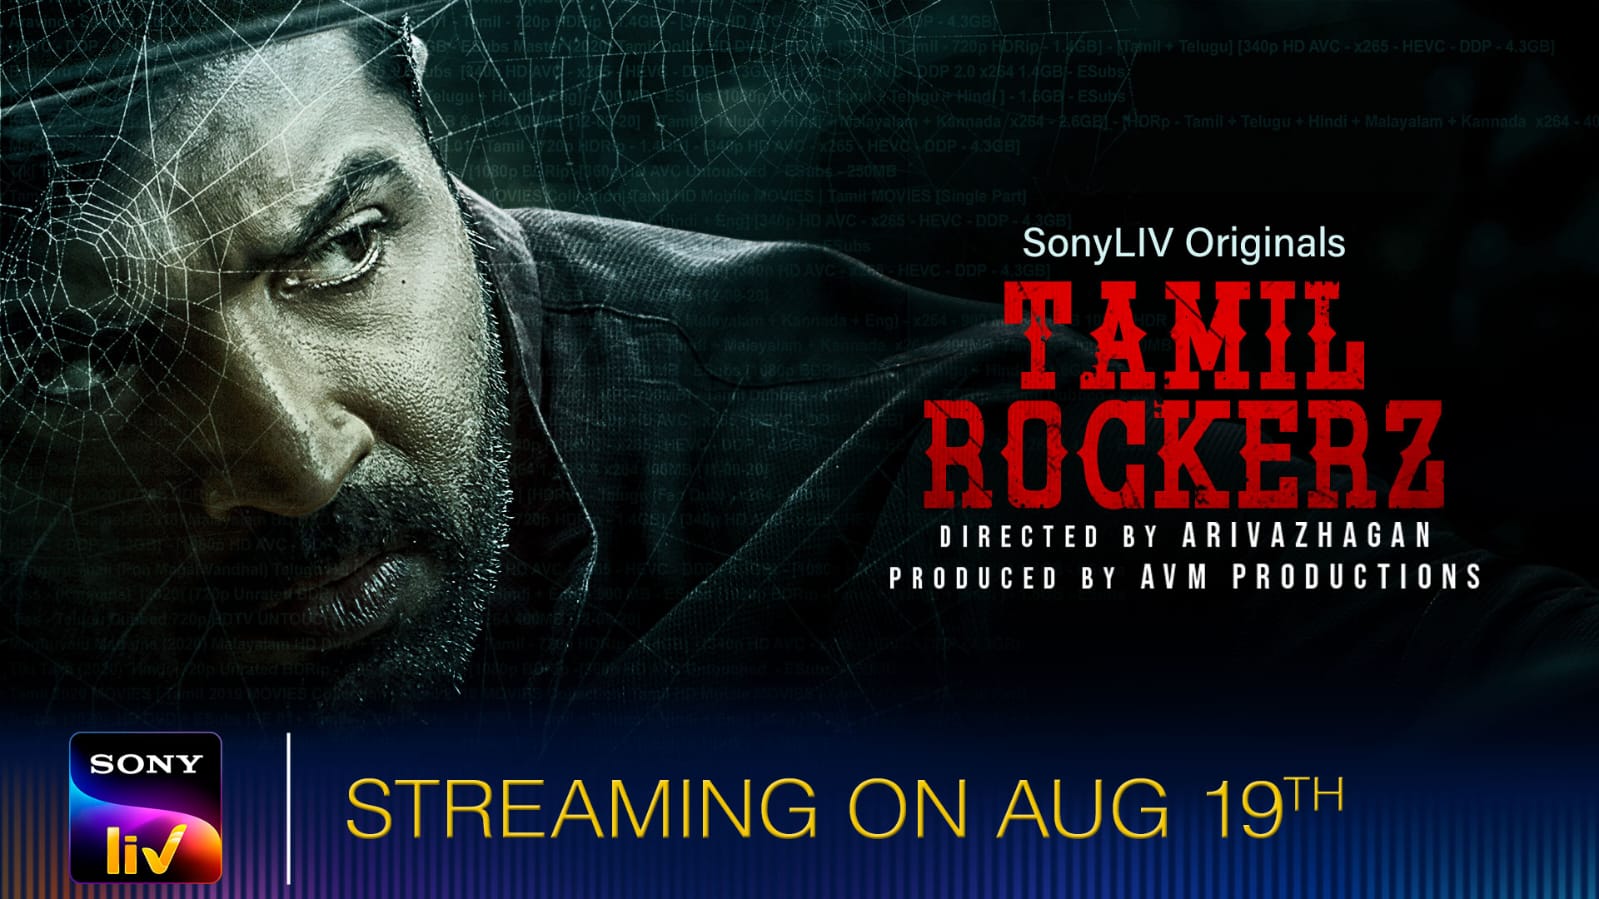 SonyLIV Tamil Rockerz to stream from 19th August